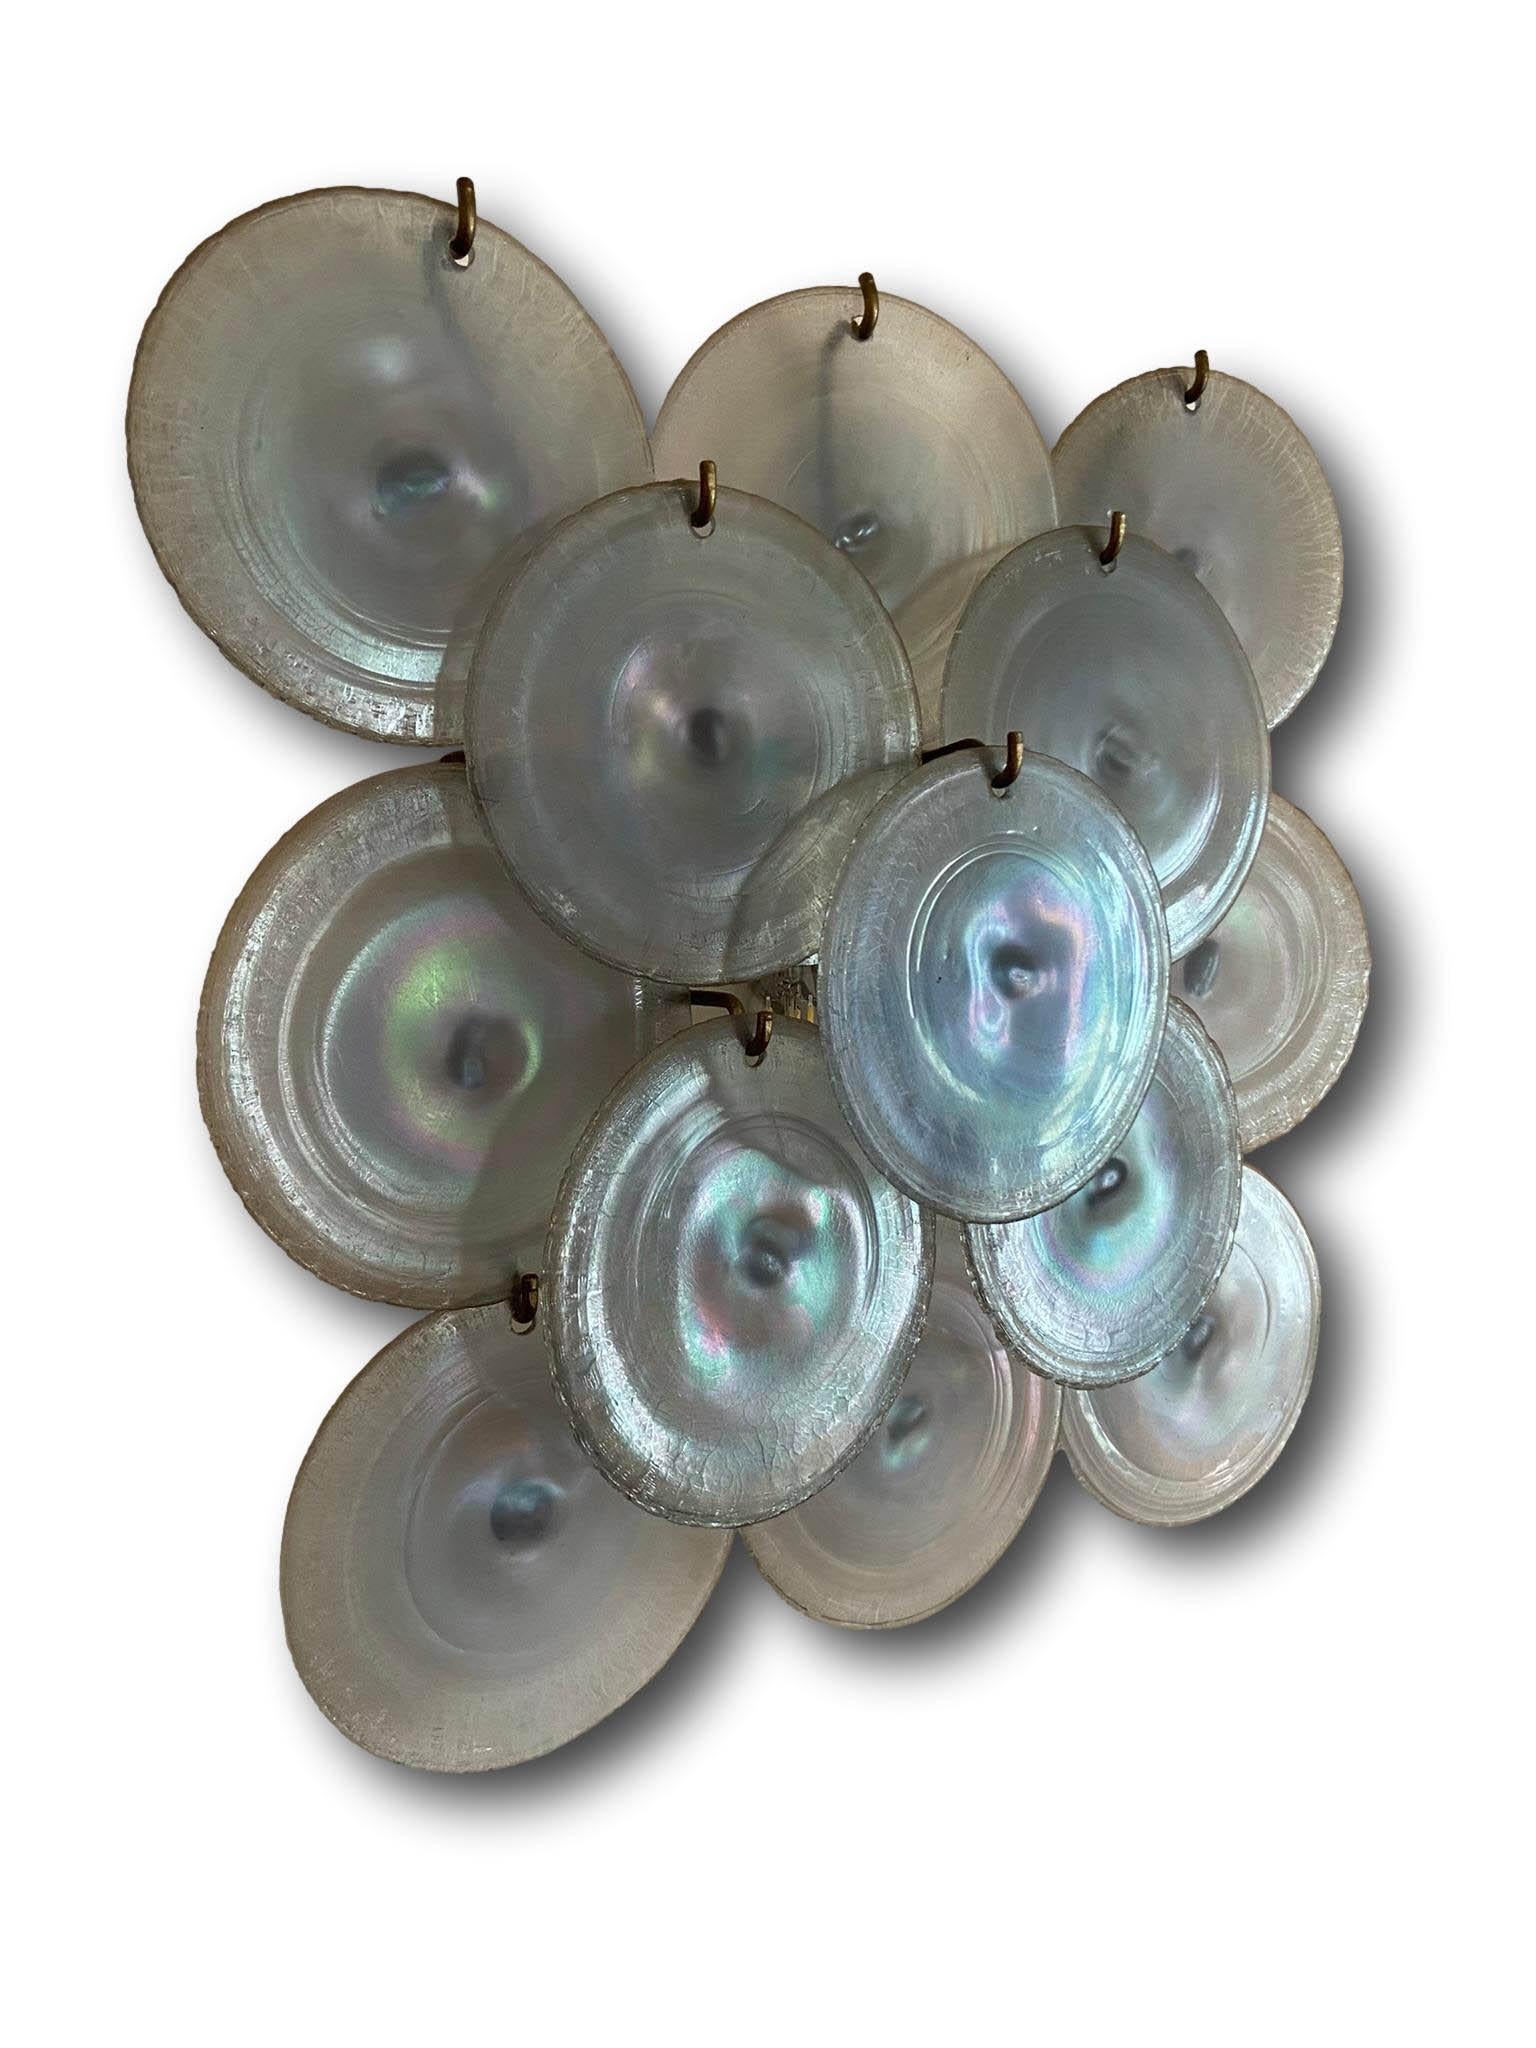 Grande applique en forme de disque en verre irisé de Murano, conçue par Carlo Nason pour Mazzega Murano, Italie, 1960. L'applique repose sur une structure en métal nickelé avec deux sources lumineuses.  Très bon état.  Le verre, aujourd'hui